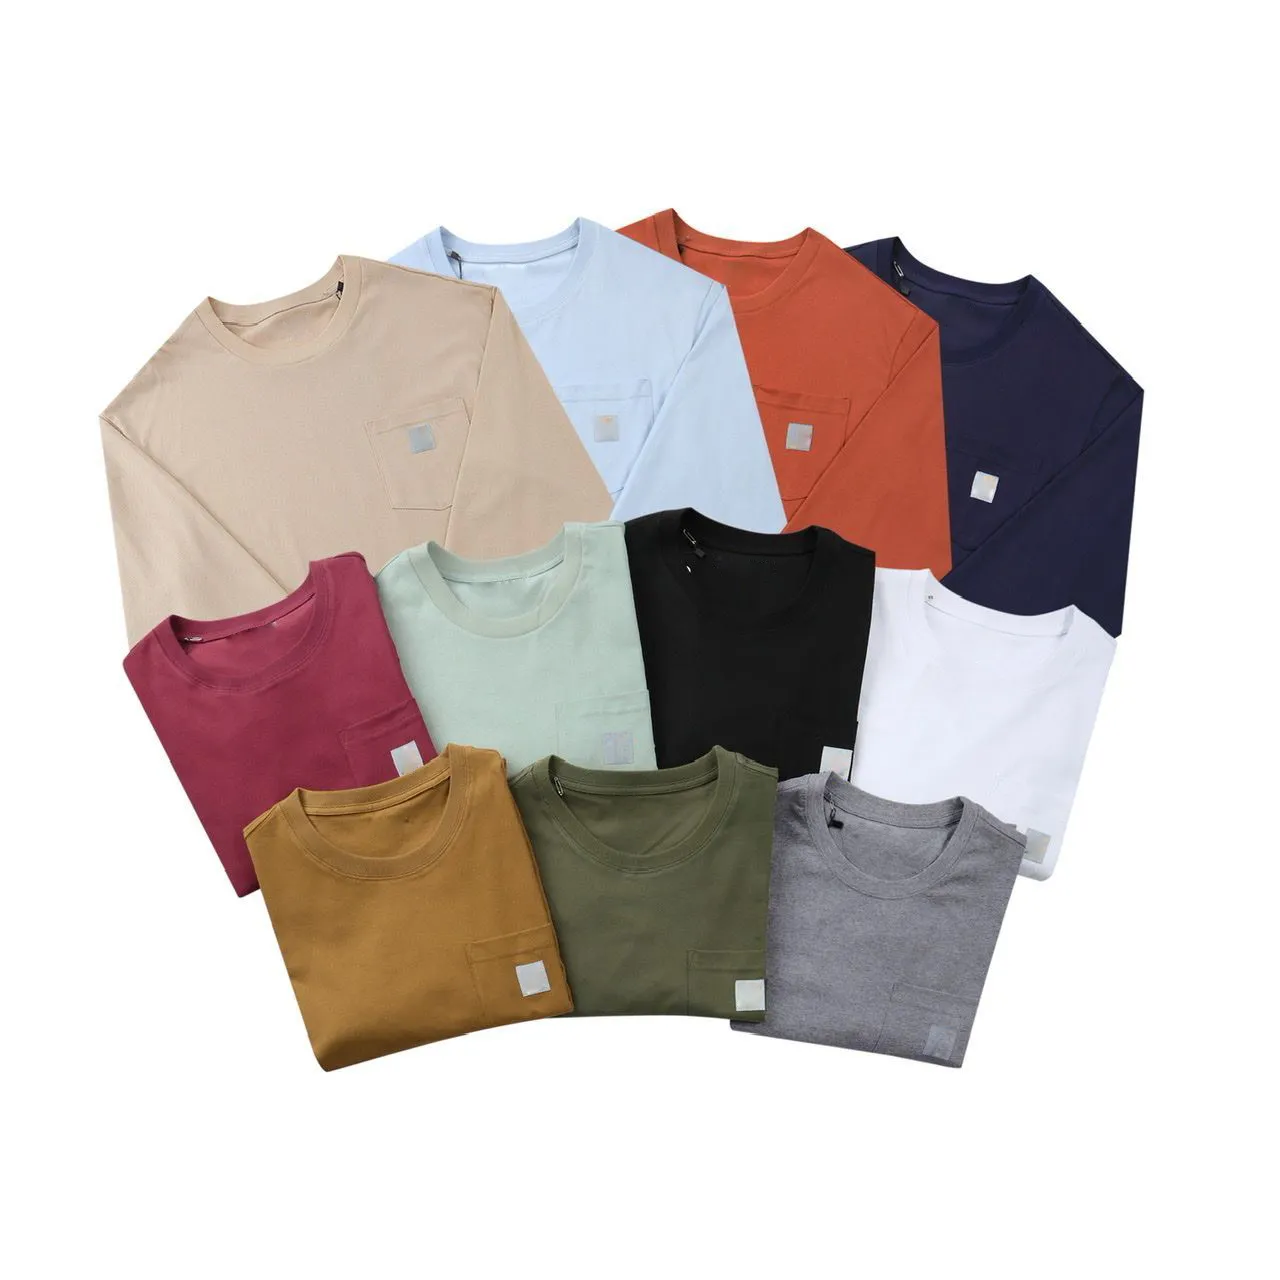 Designerska bluza męska skoczka 100% bawełniana 230GSM z kieszonkową etykietą długi rękaw dla mężczyzn i kobiet pary stroje wiosenne jesień